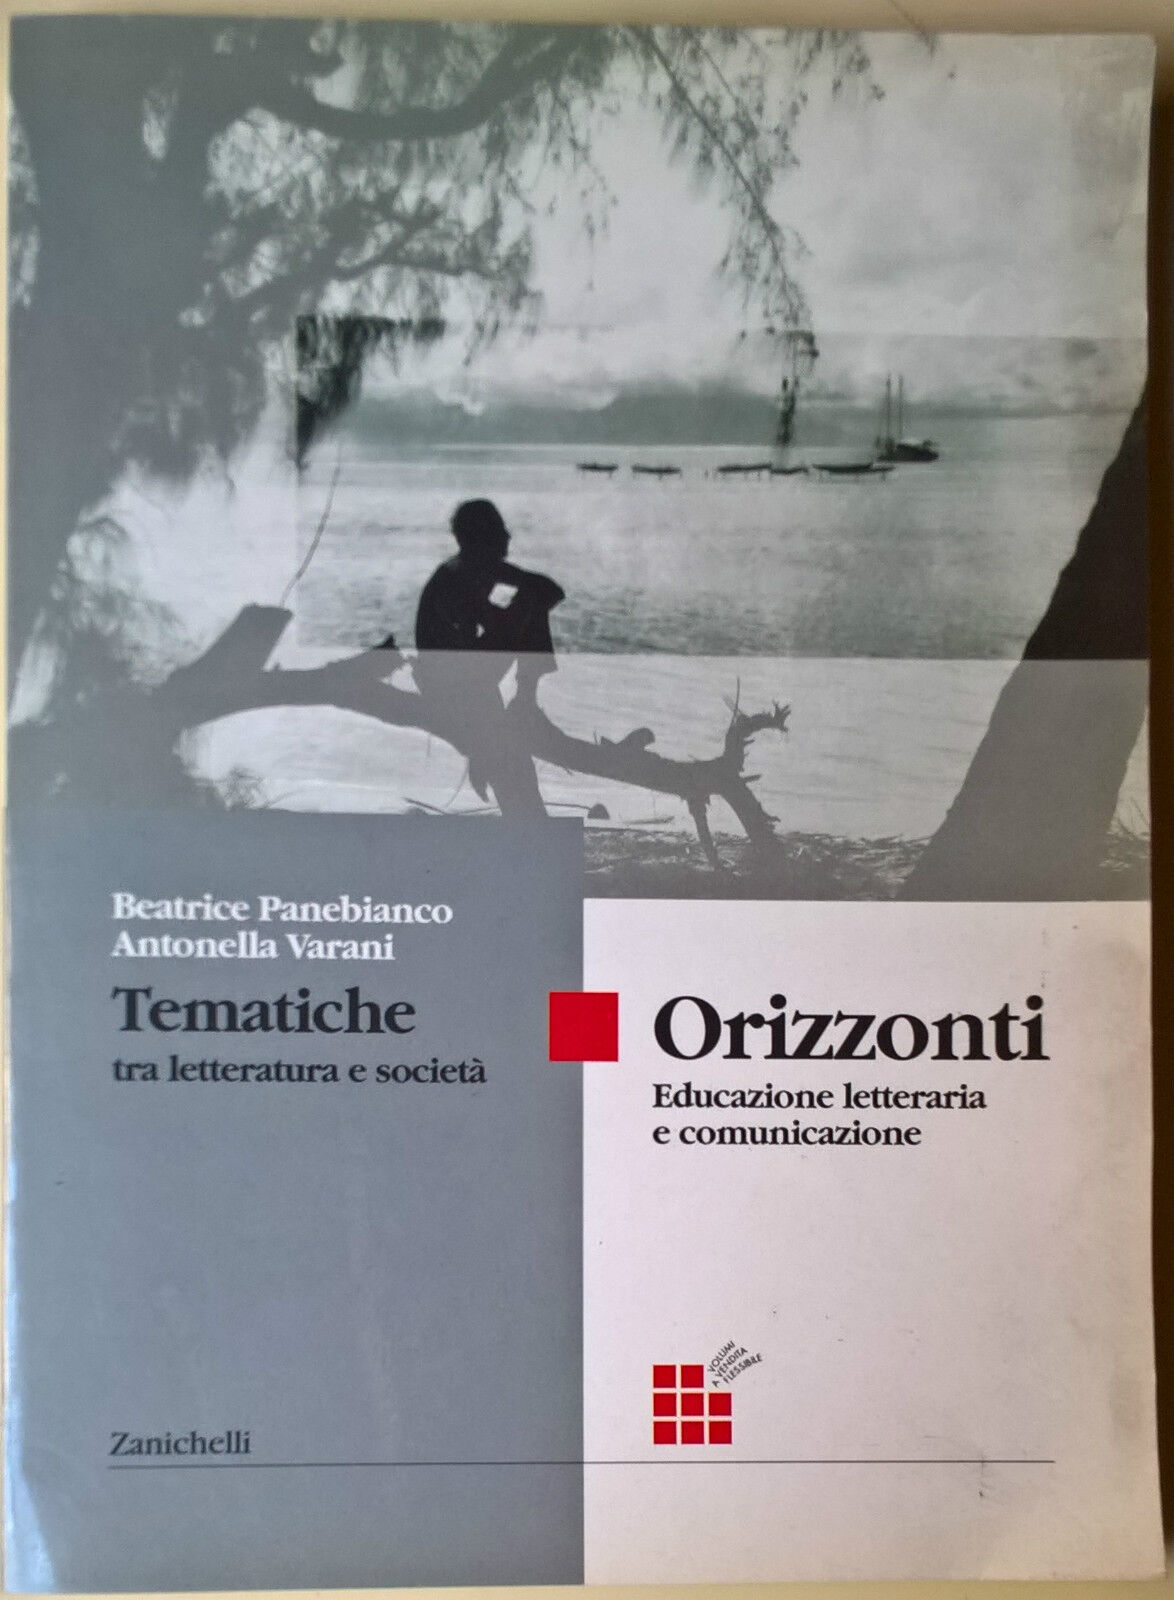 Orizzonti Tematiche tra letteratura e societ? - Panebianco - Zanichelli, 2000 -L